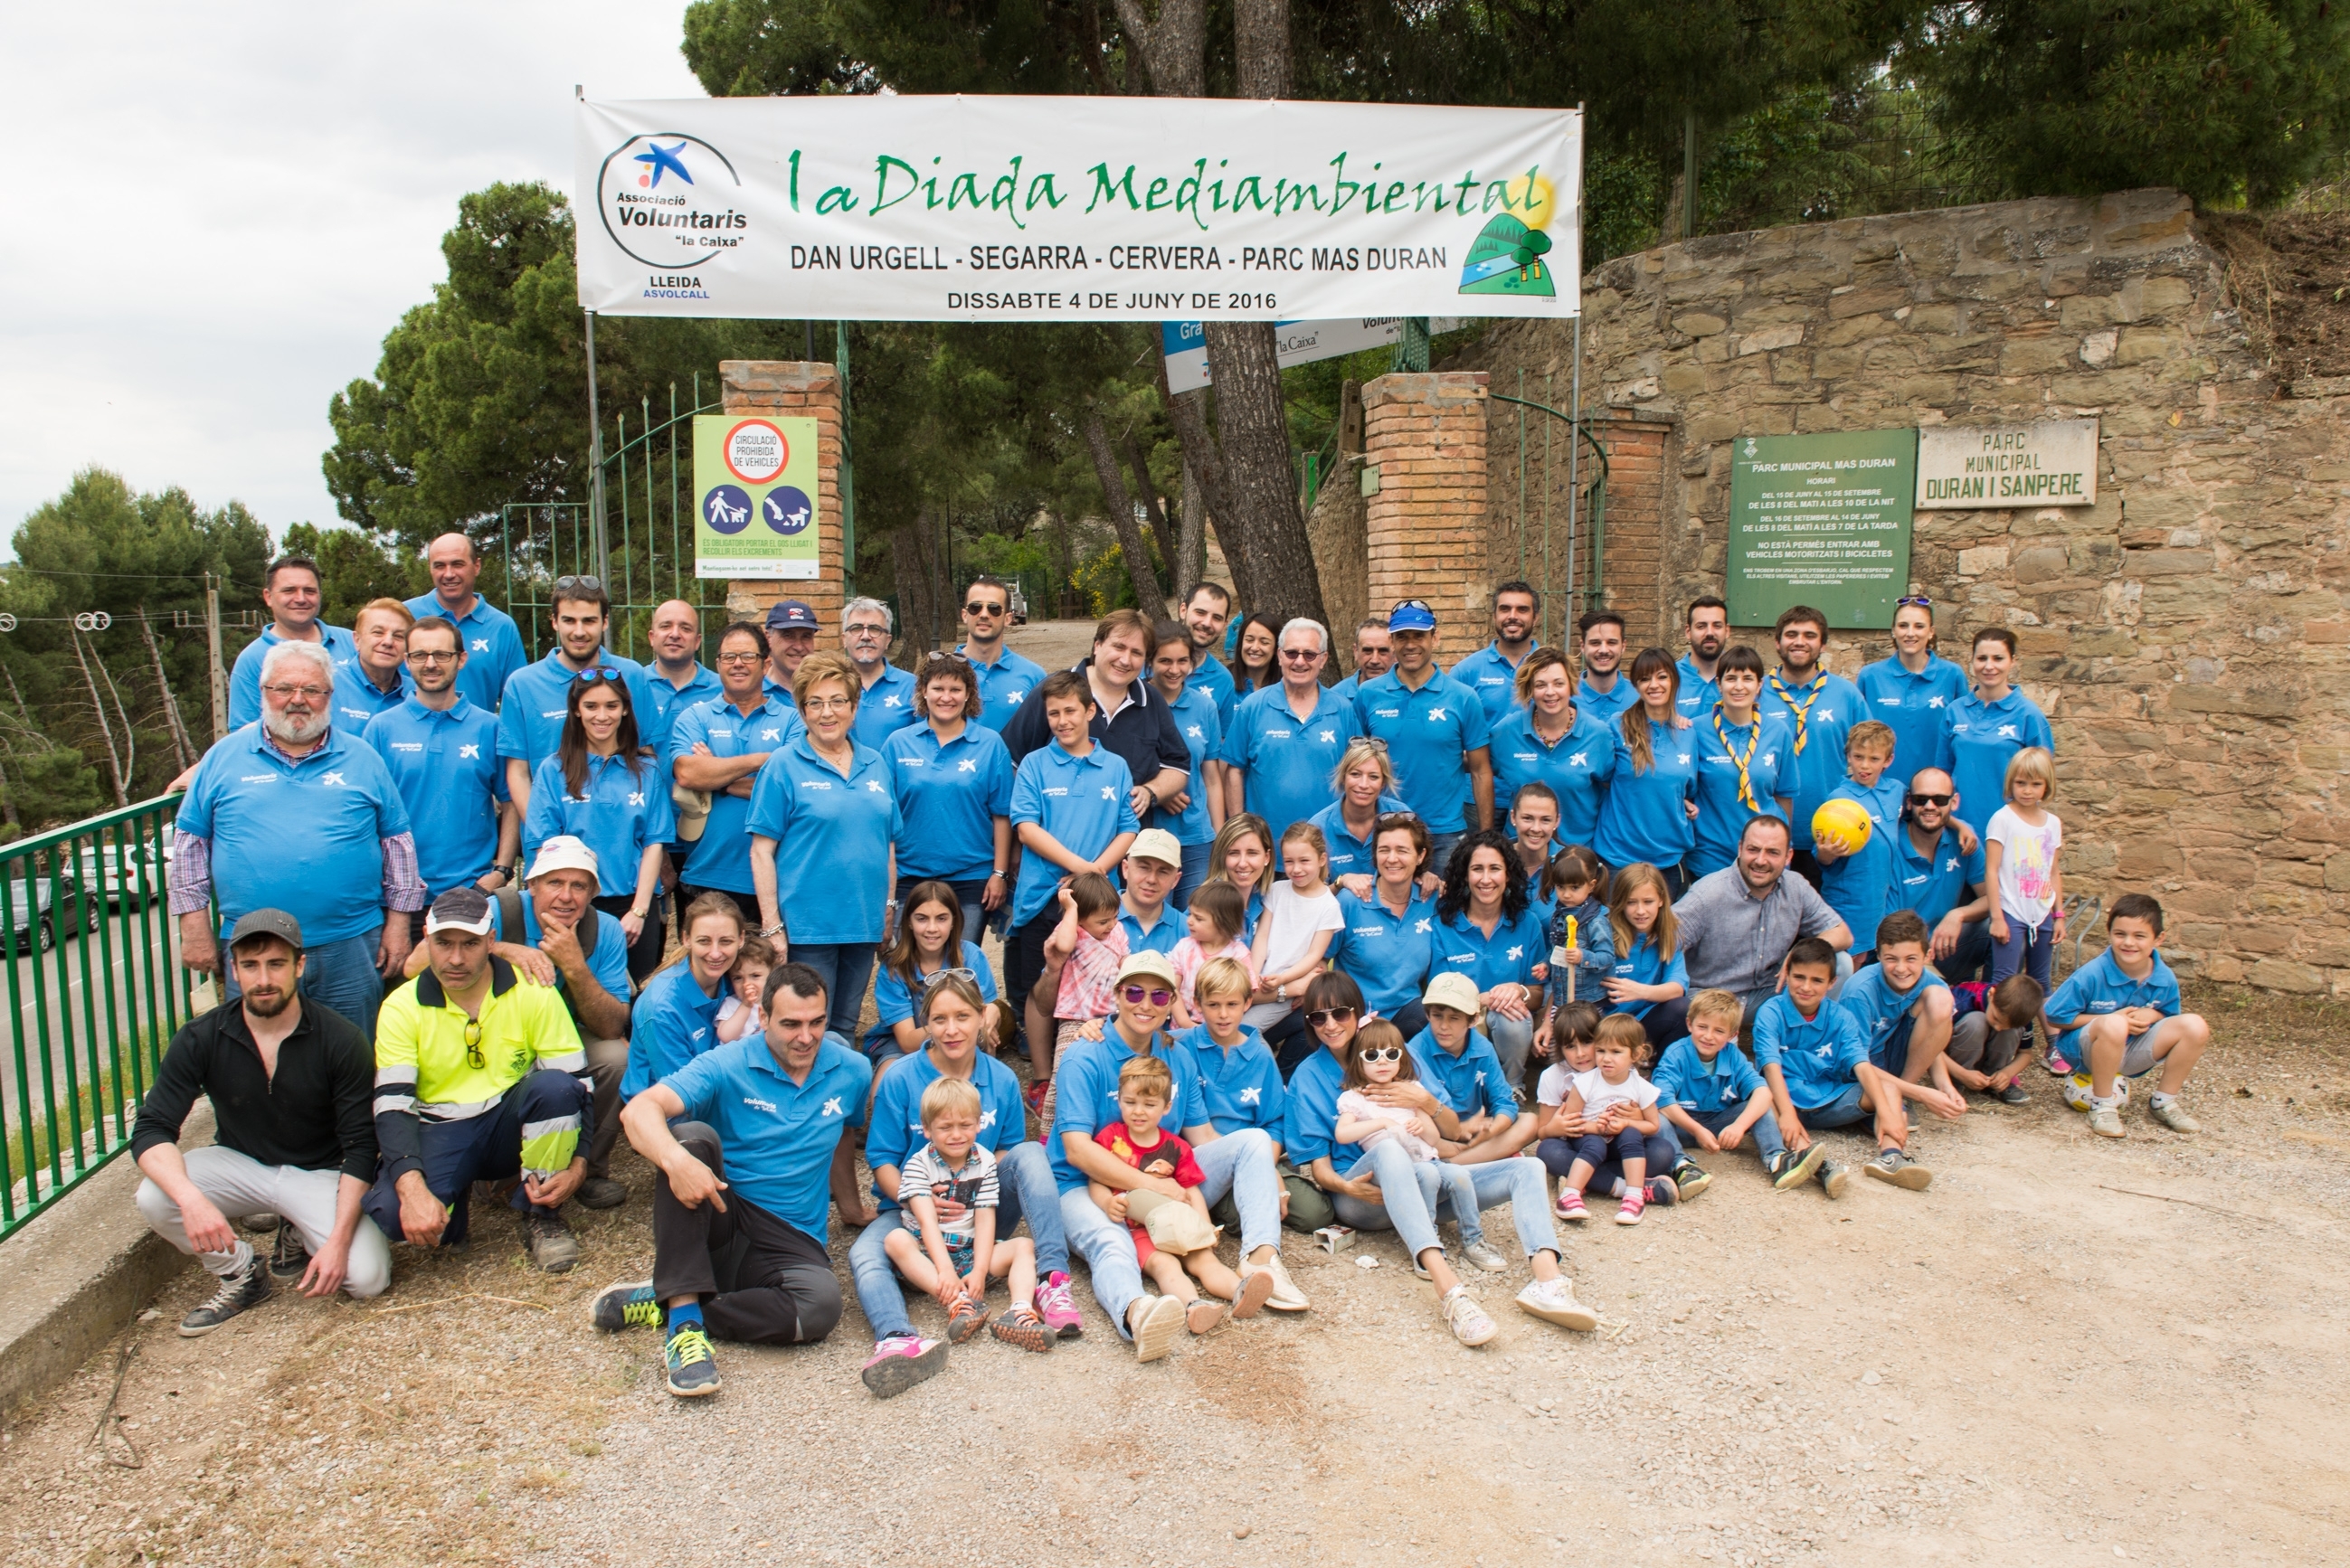 Èxit de participació a la Diada Mediambiental al Parc Mas Duran de Cervera